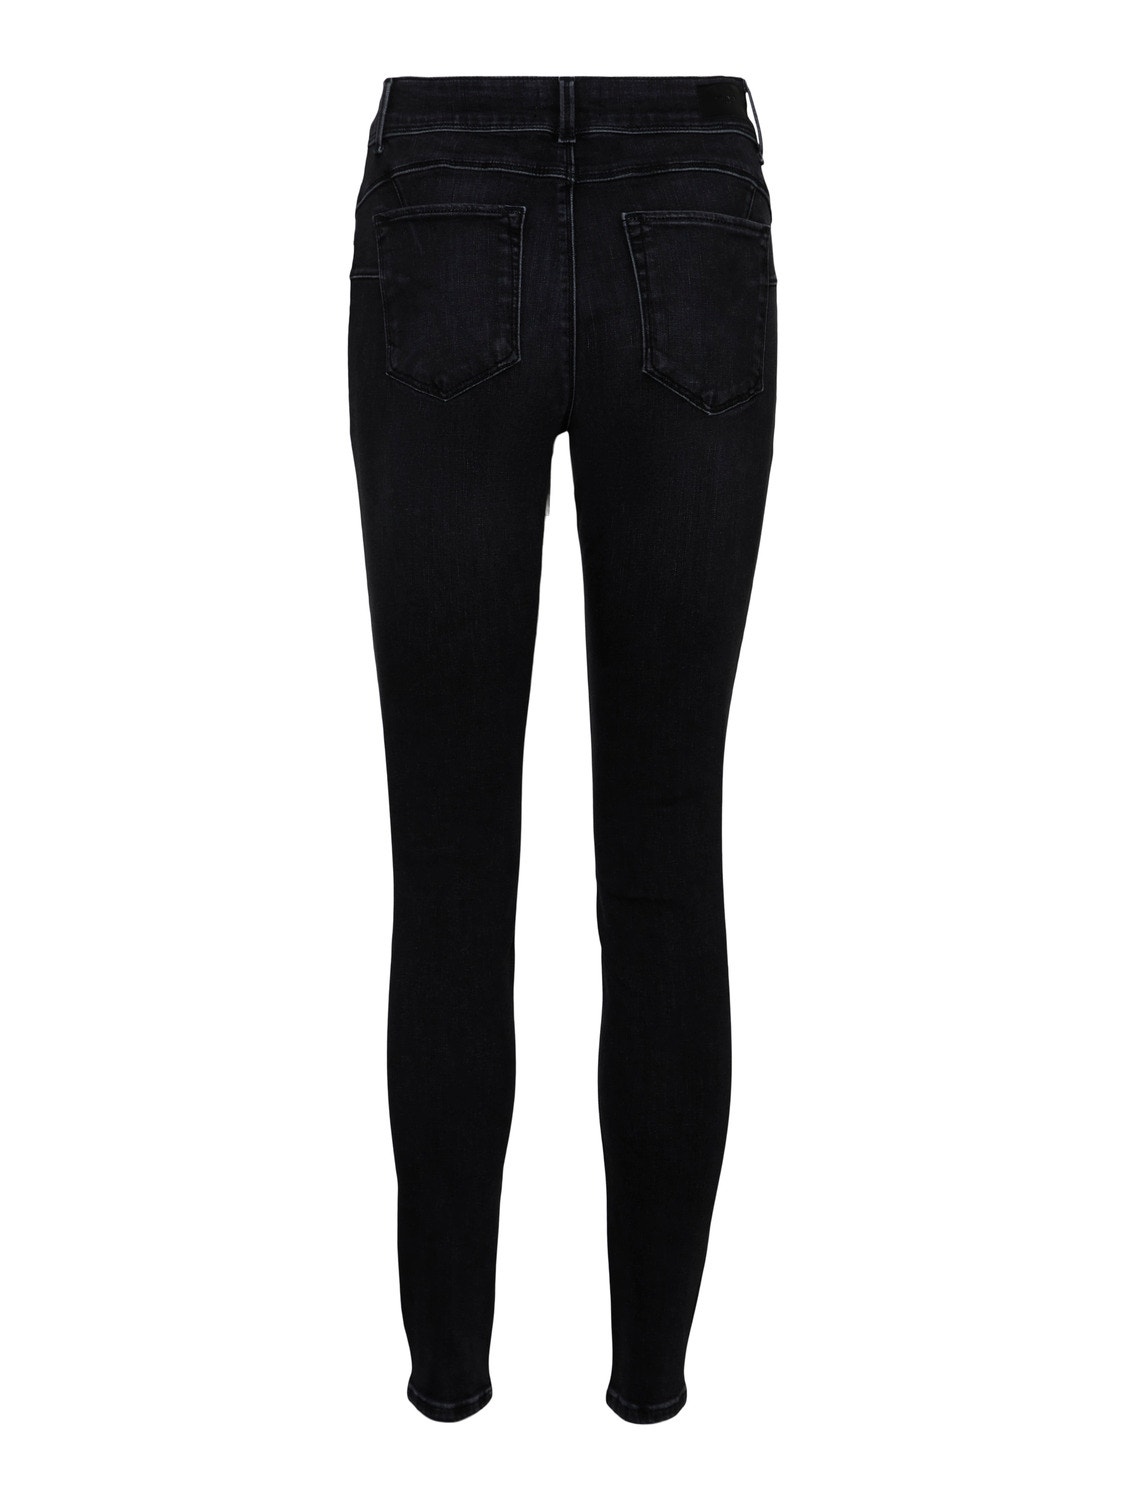 Vero Moda VMEMBRACE Vita media Skinny Fit Jeans -Black Denim - 10291171